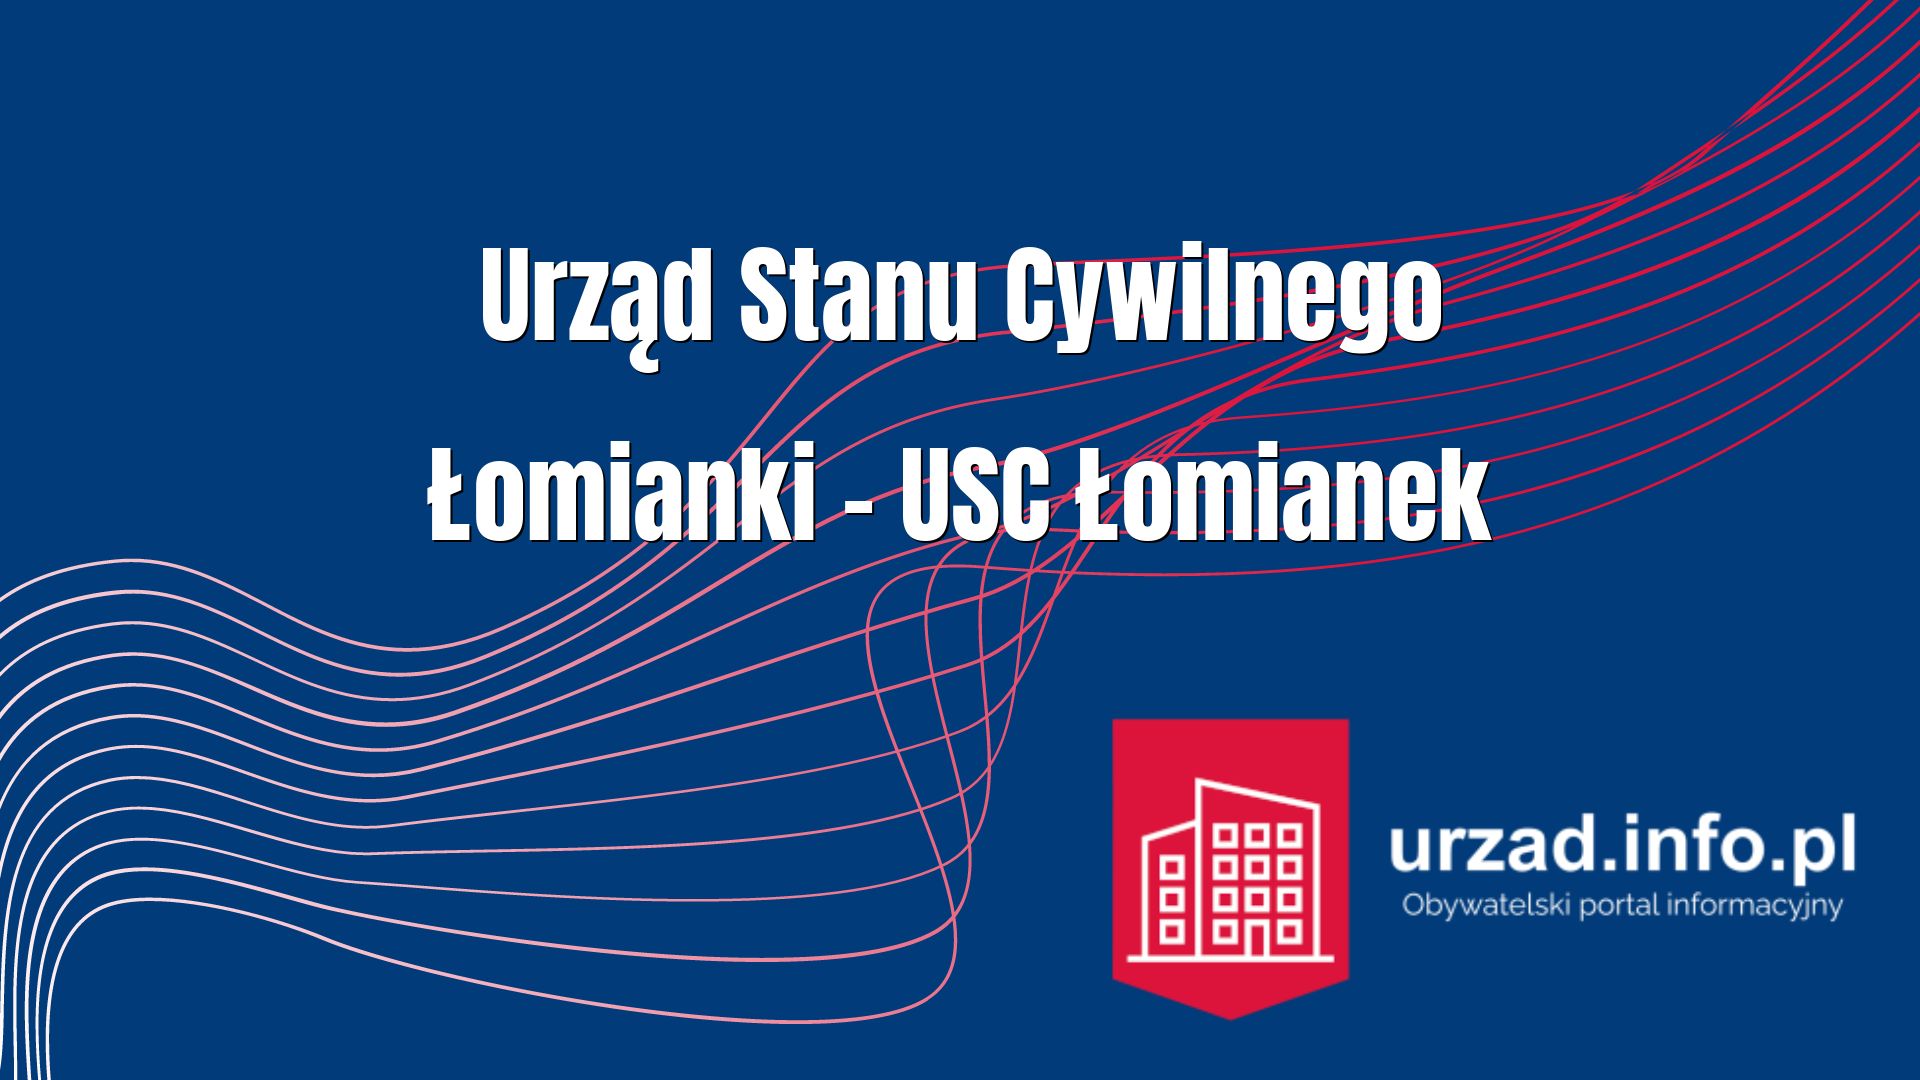 Urząd Stanu Cywilnego Łomianki – USC Łomianek